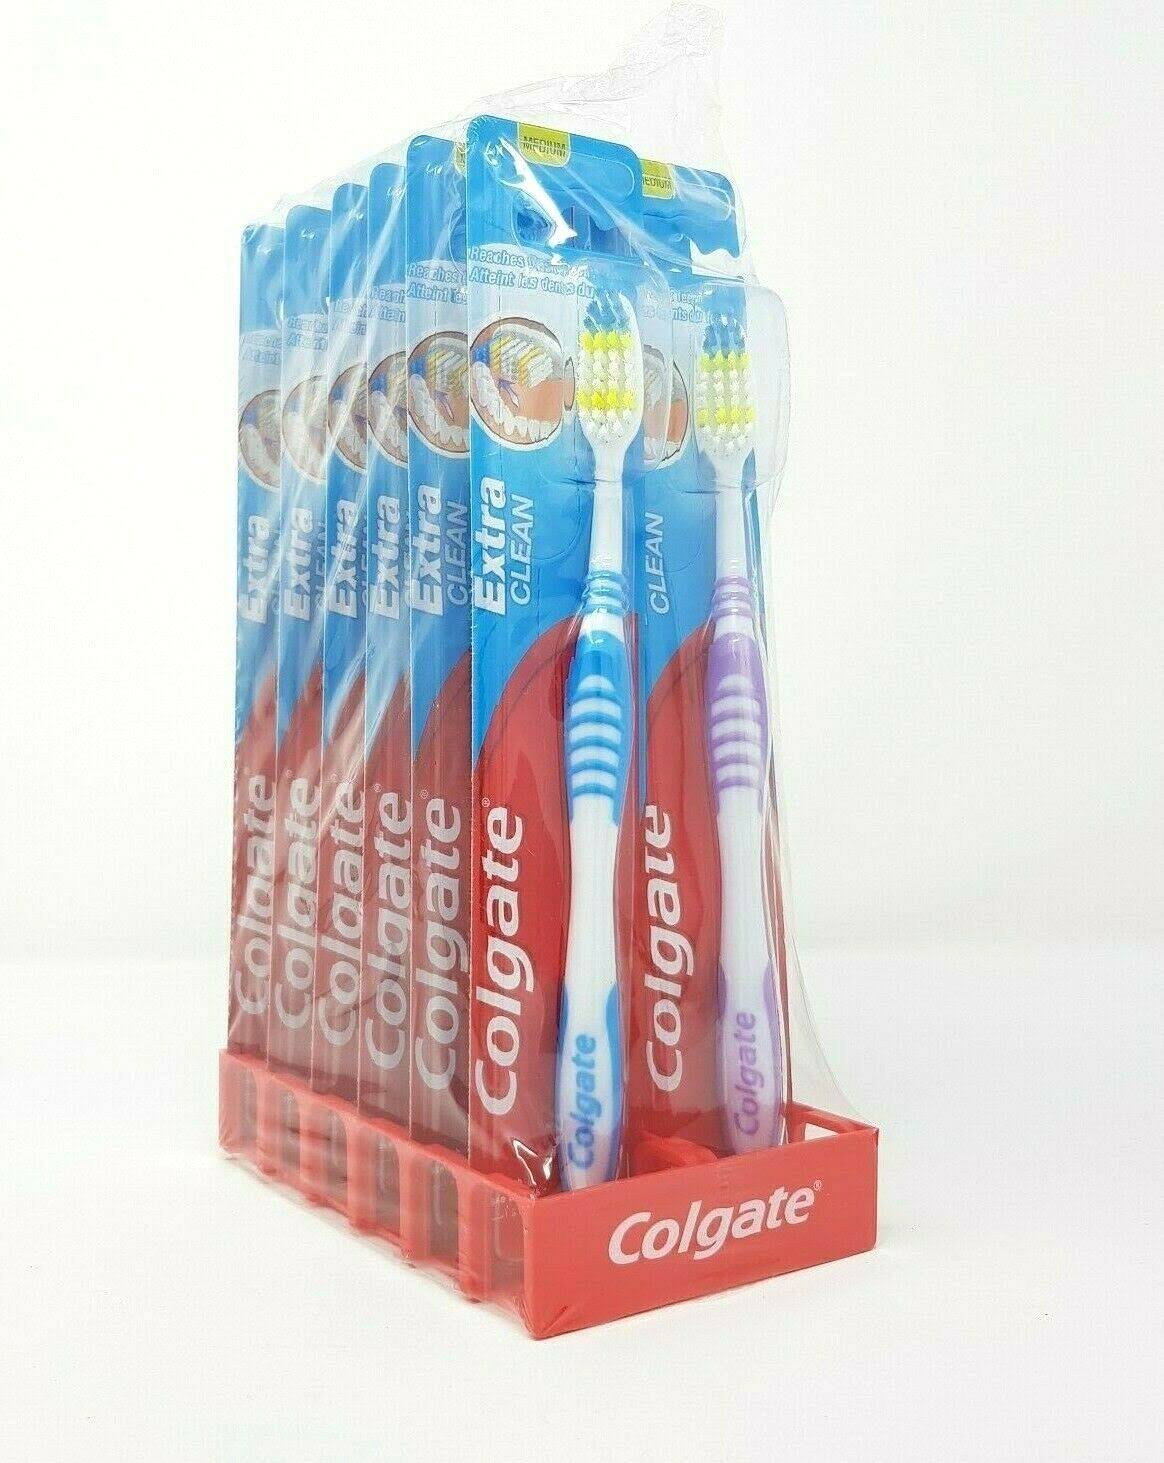 Colgate extra clean toothbrushes 12 pcs multi coloured medium bristles